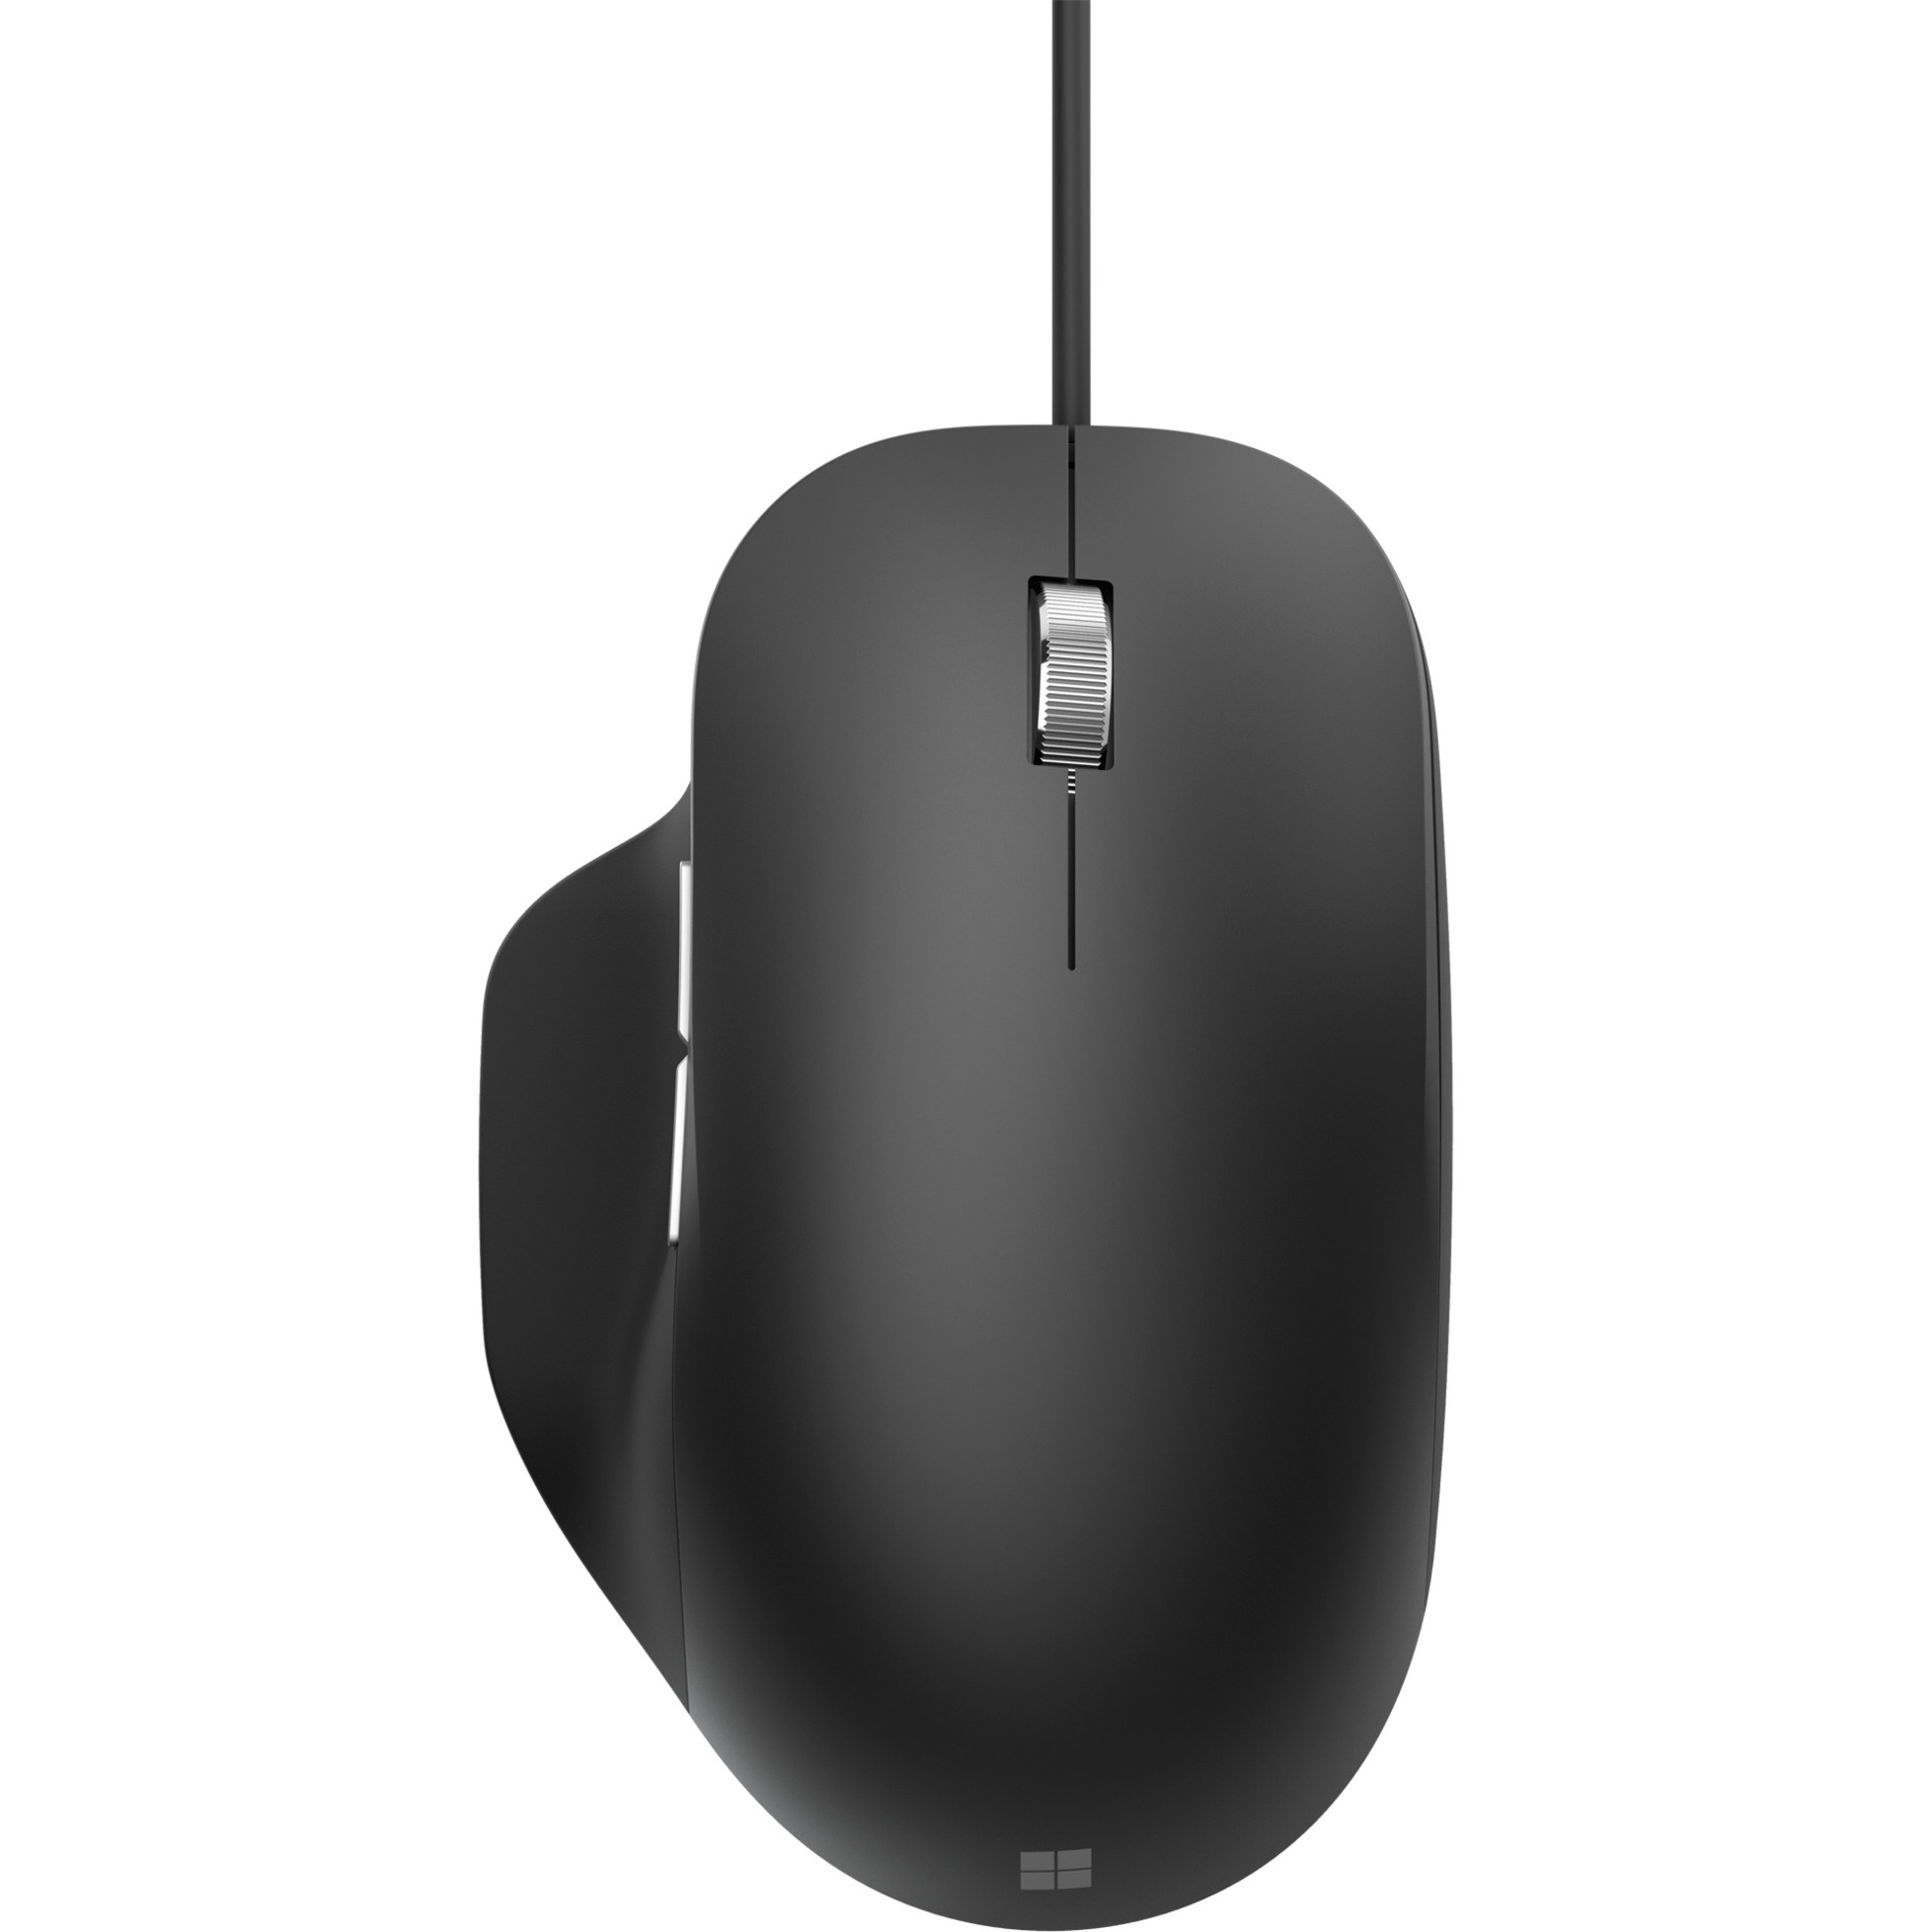 Image of Alternate - Ergonomic Mouse, Maus online einkaufen bei Alternate